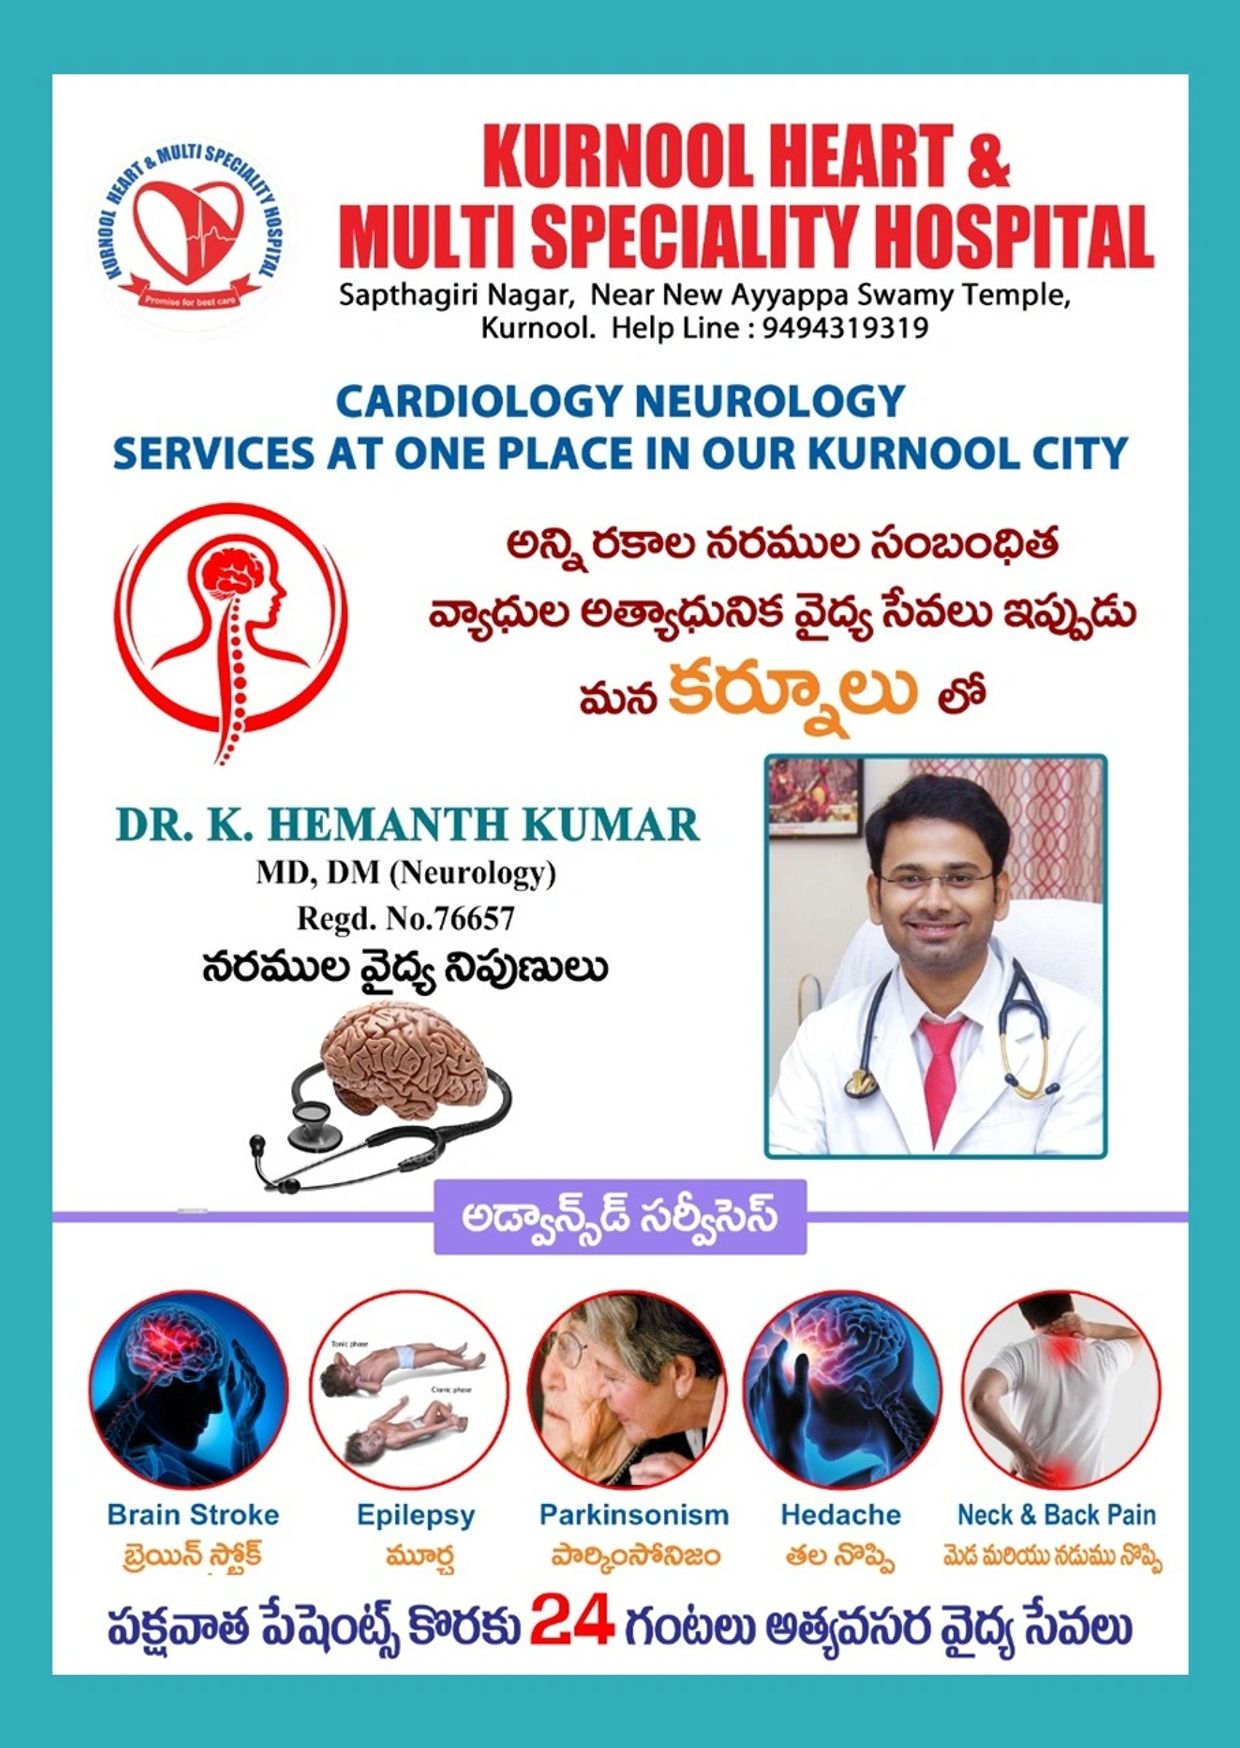 Dr k. Hemanth kumar top neurologist of kurnool